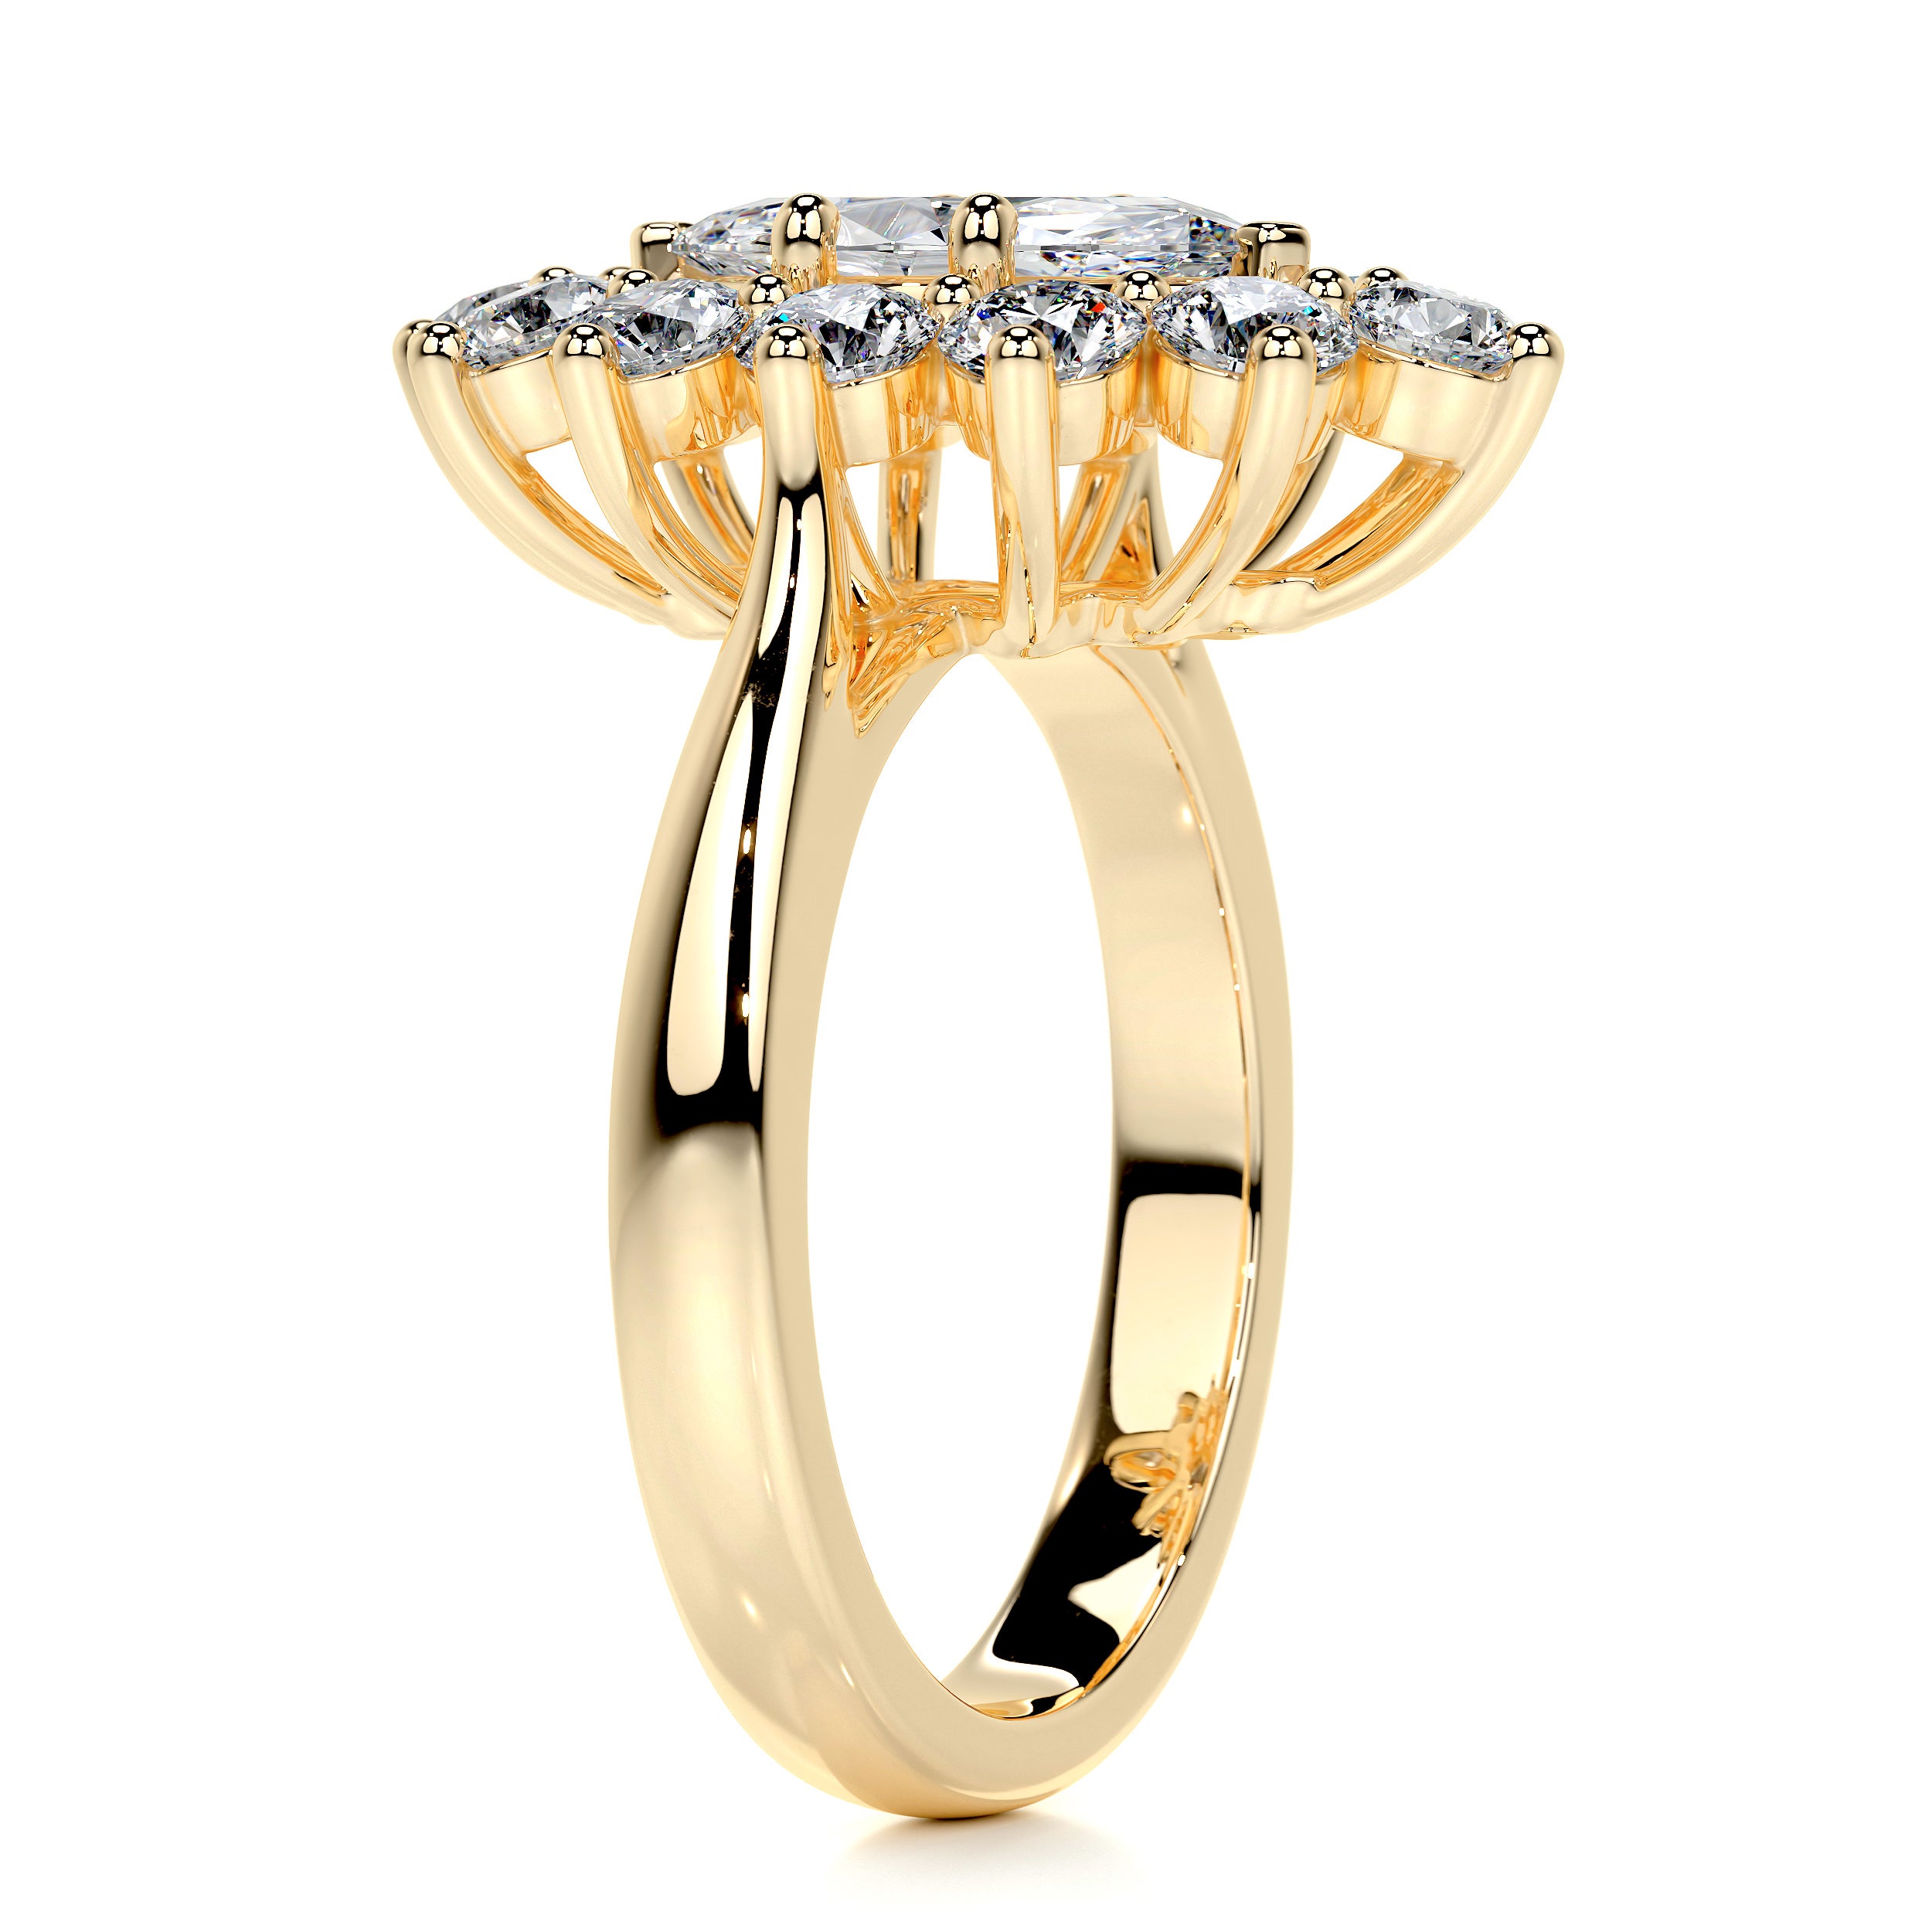 Yali Diamond Engagement Ring -18K Yellow Gold